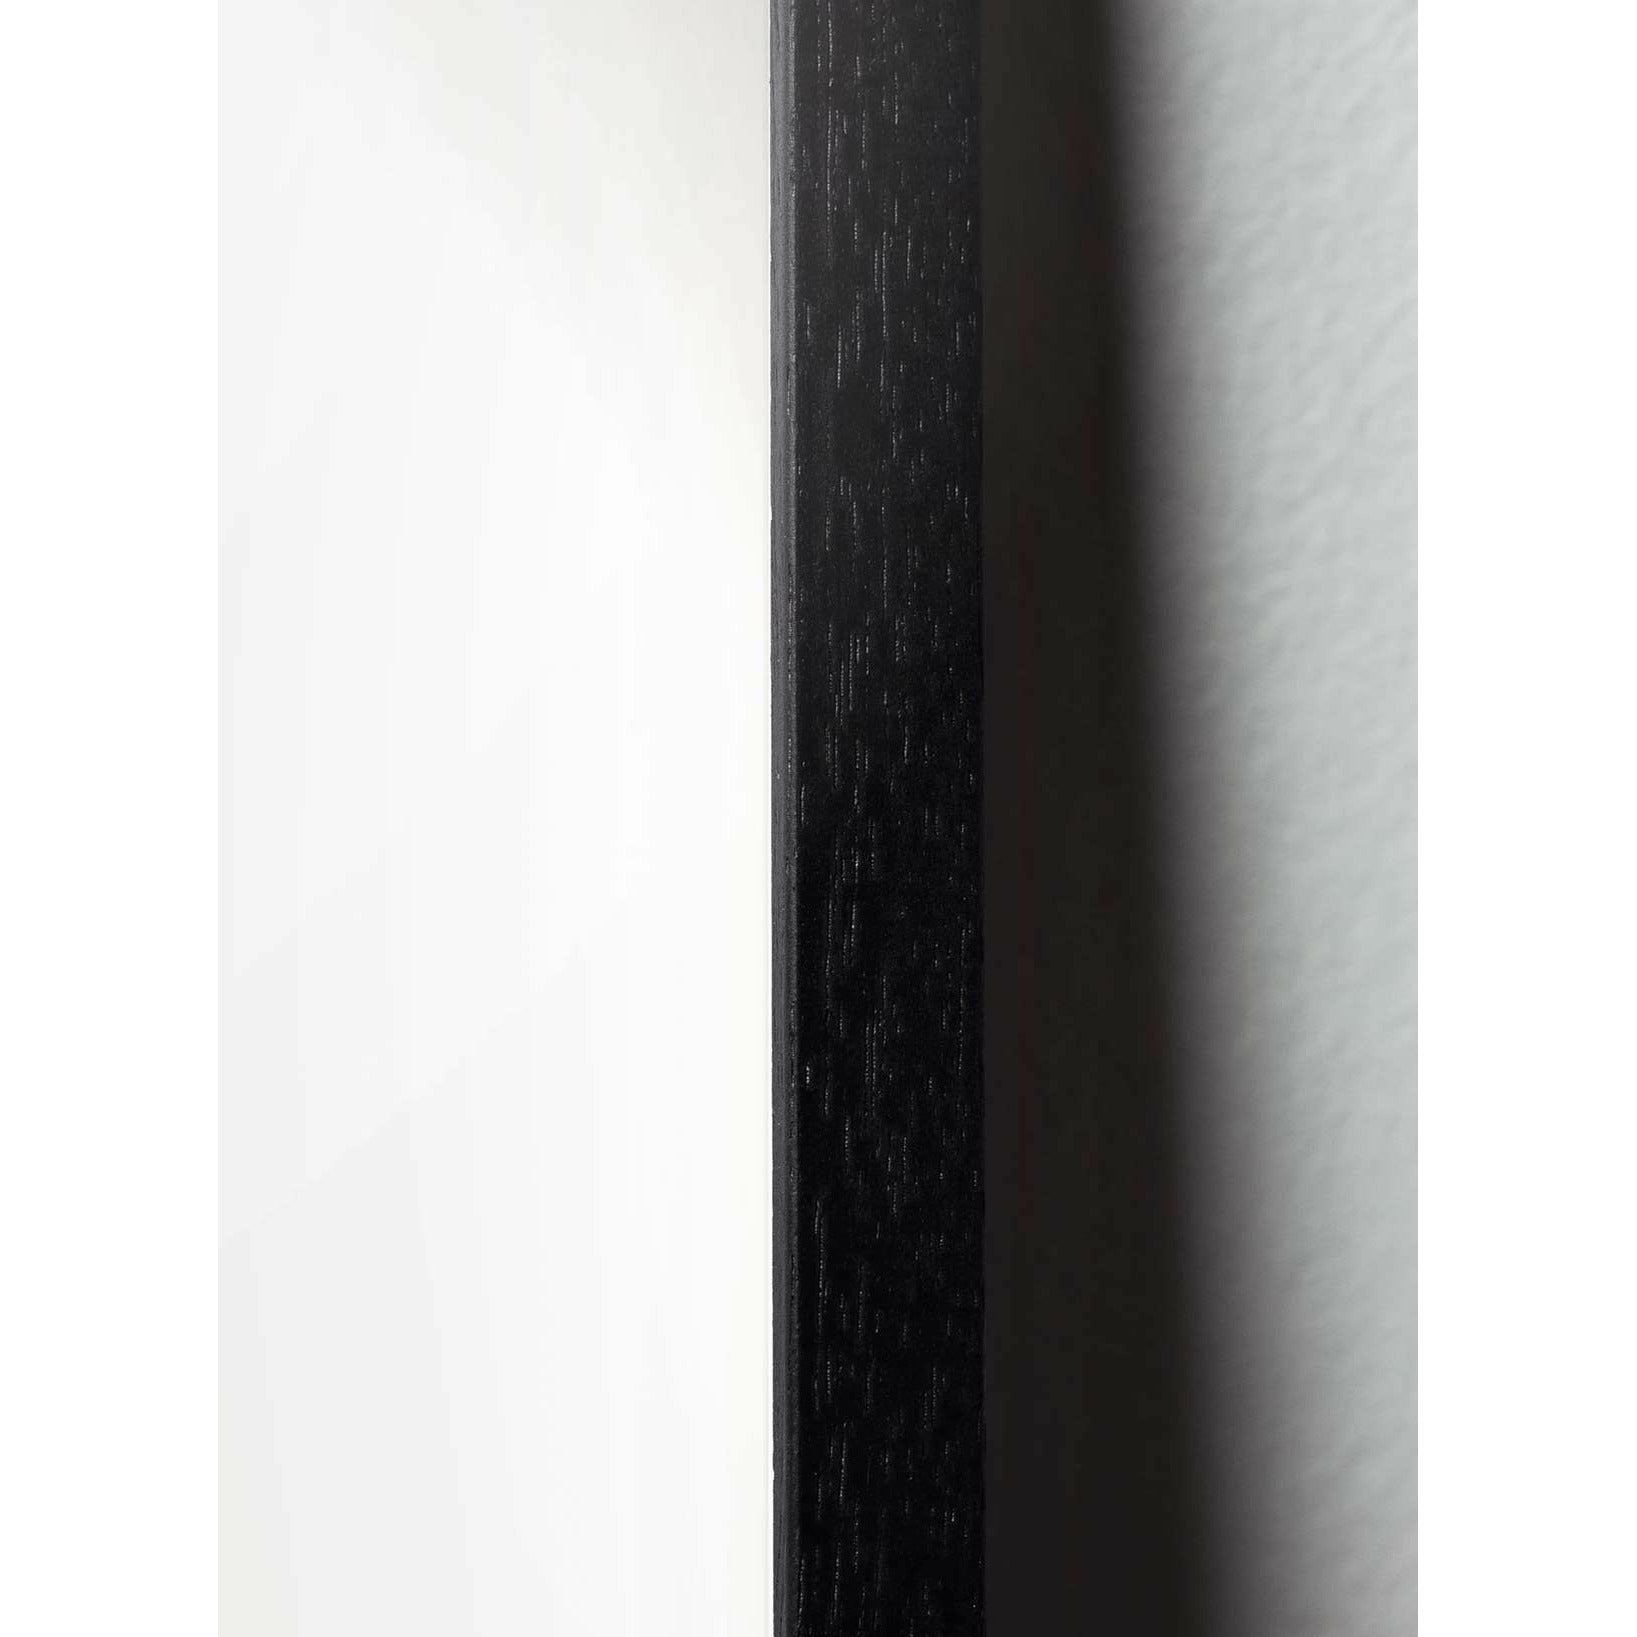 Brainchild Egg Classic Poster, Rahmen aus schwarz lackiertem Holz 30x40 cm, schwarzer Hintergrund